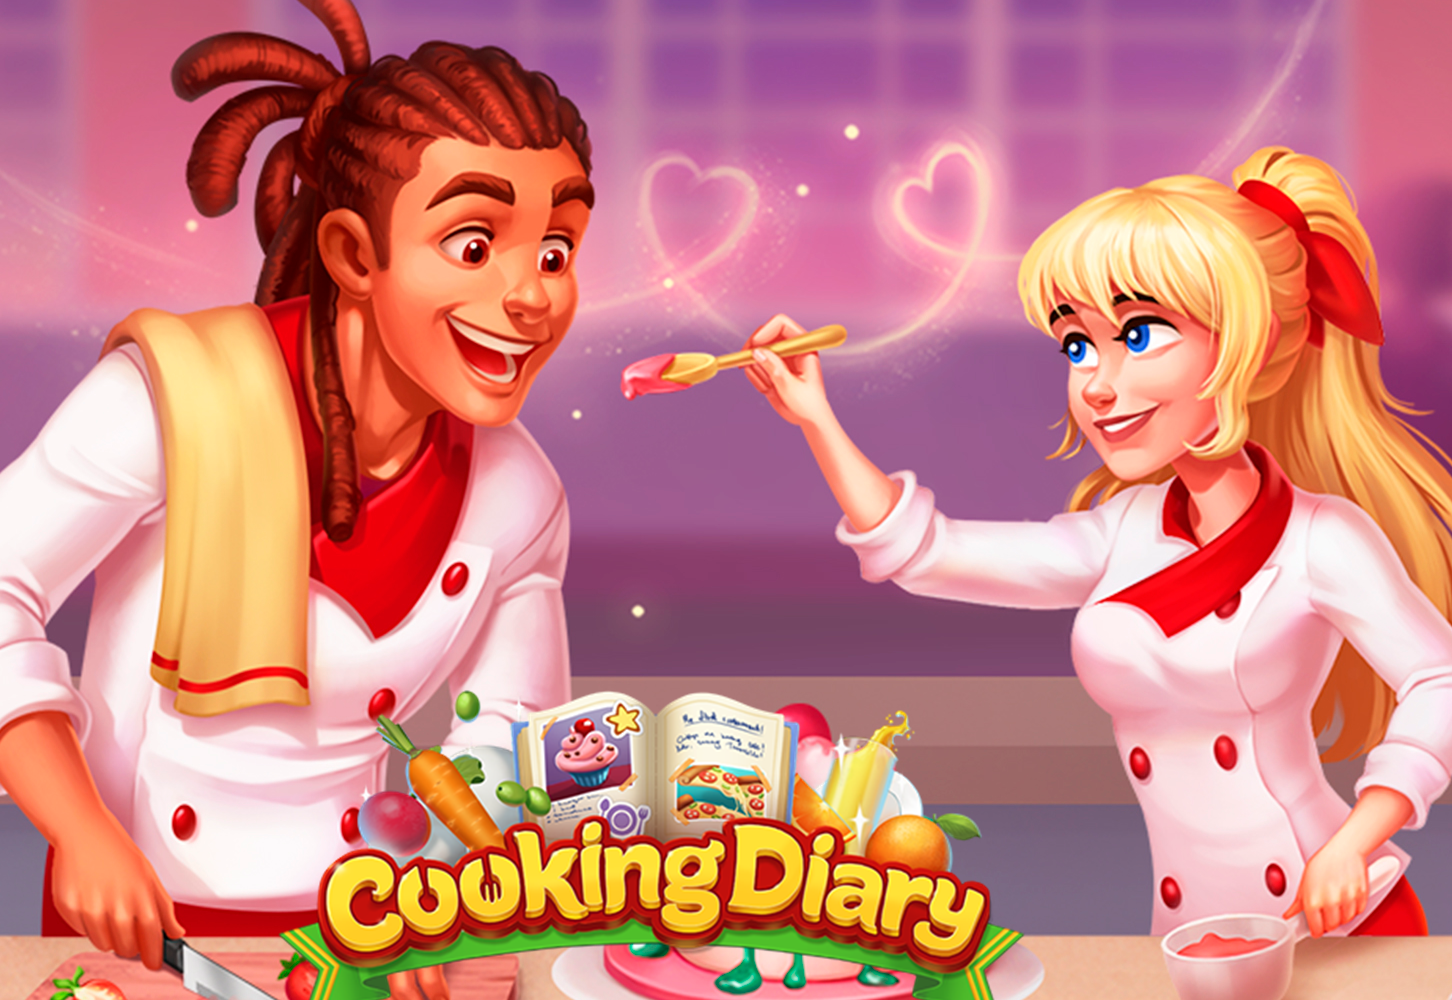 תהנה ממשחק הבישול הפופולרי ביותר בעולם עם החברים שלך עכשיו!